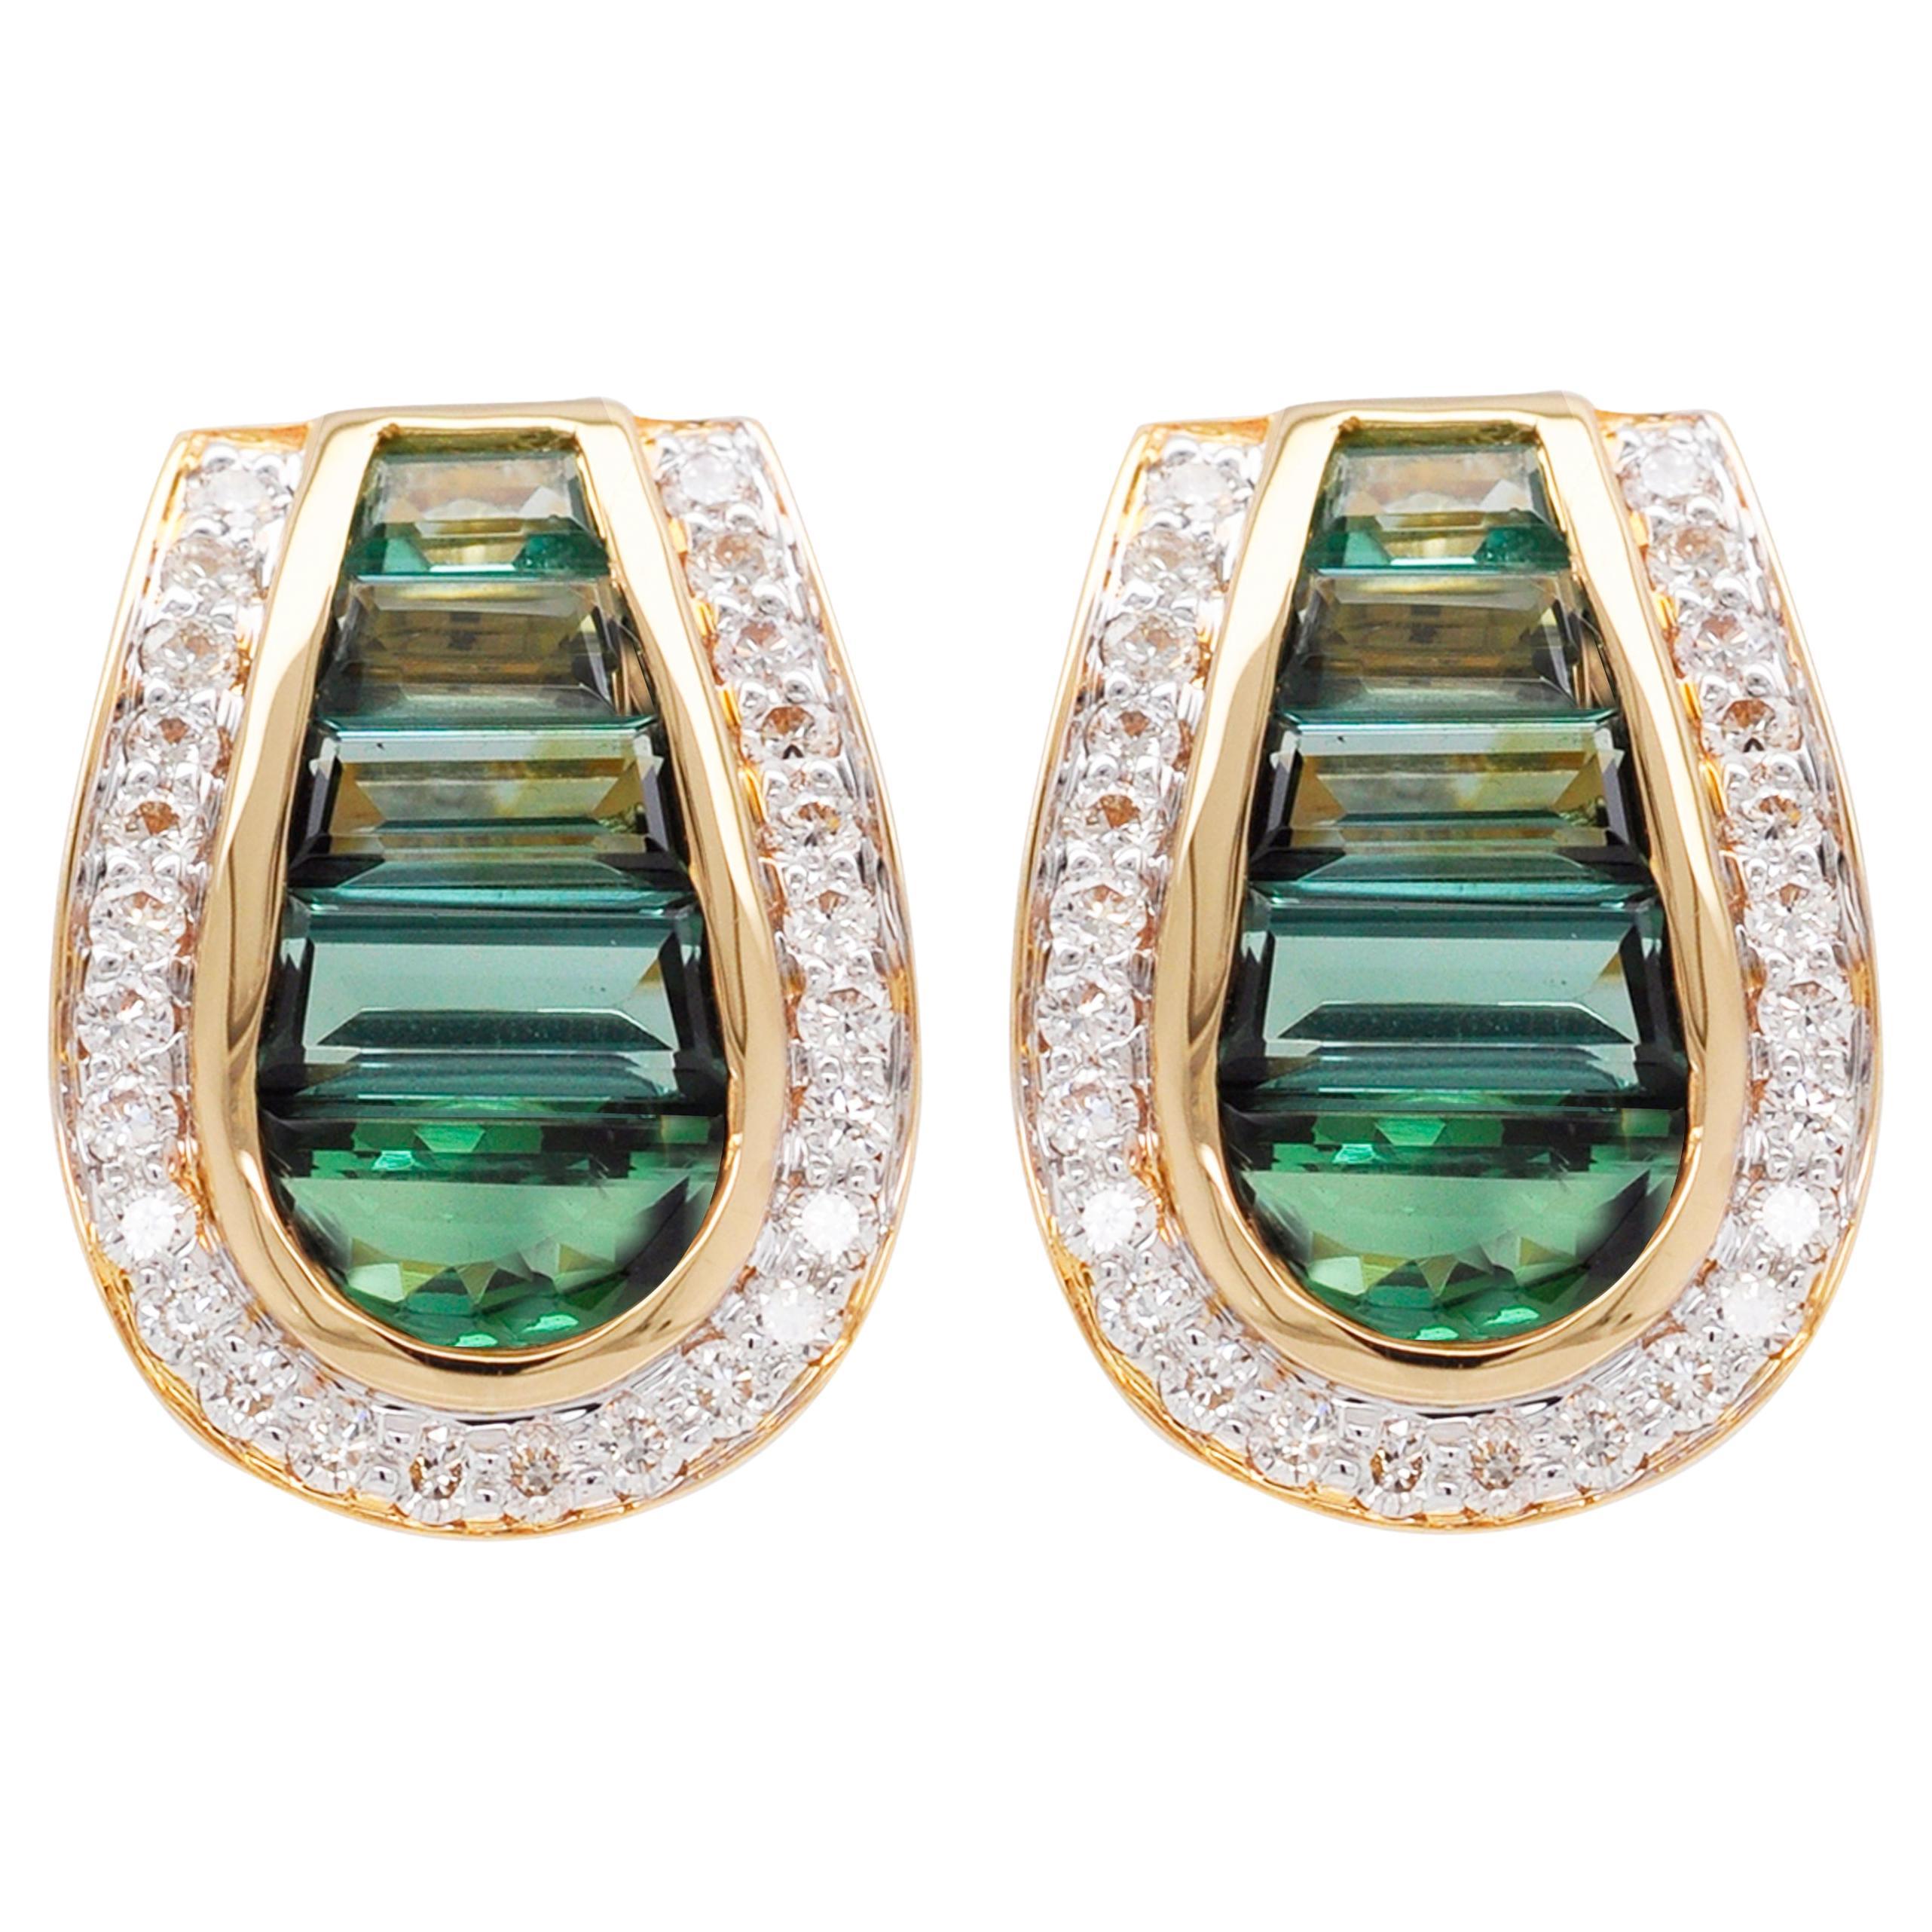 18 Karat Gold Art Deco Style Channel Set Green Tourmaline Diamond Studs Earrings